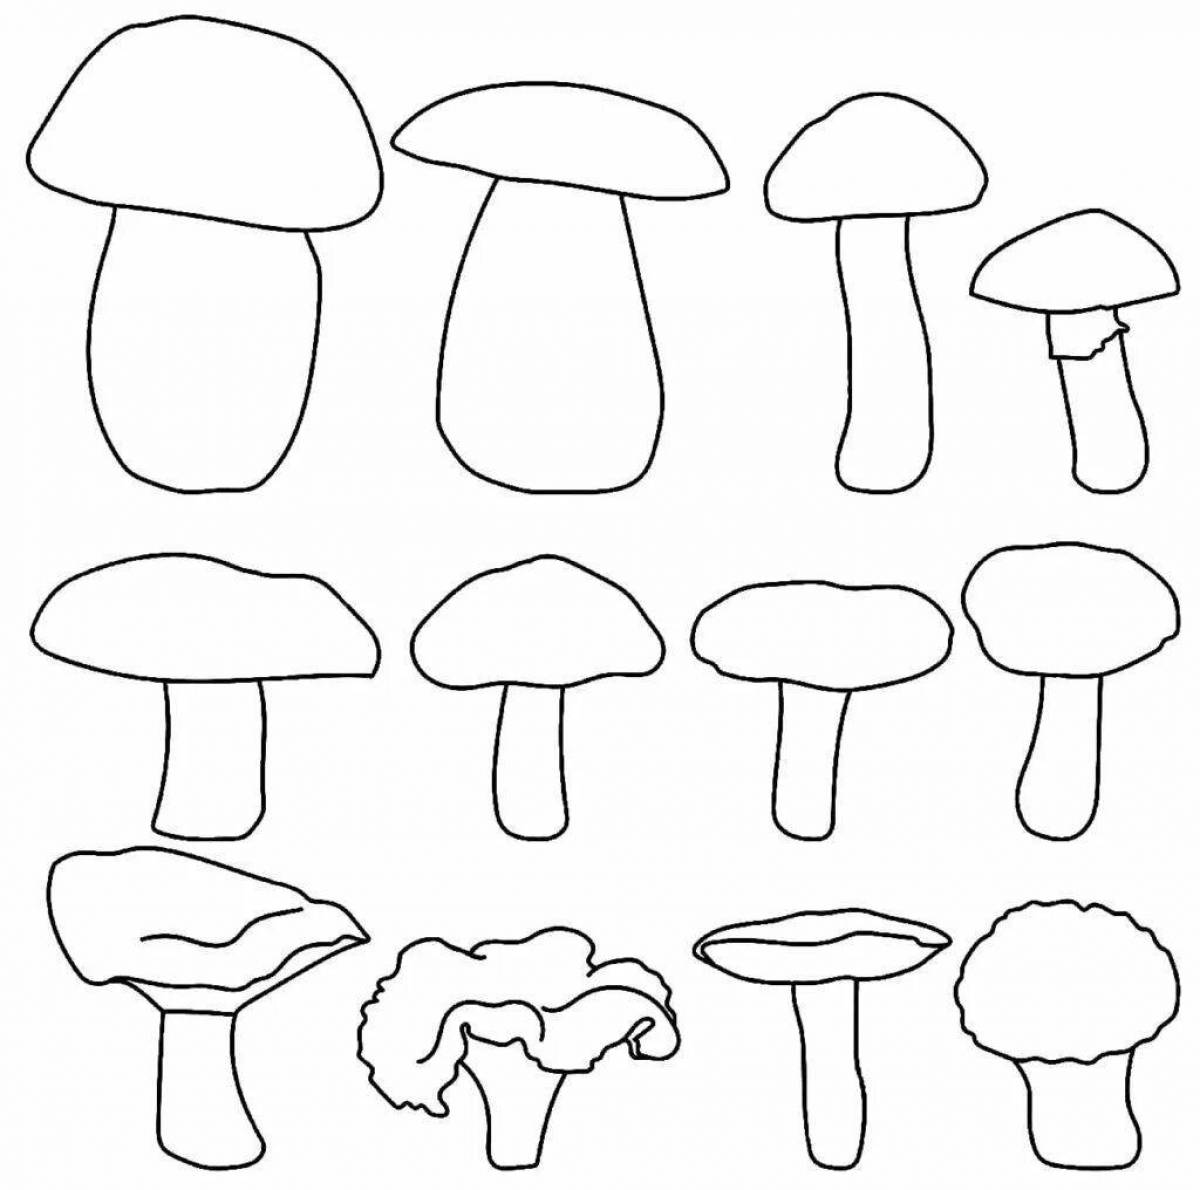 Intricate inedible mushrooms coloring book